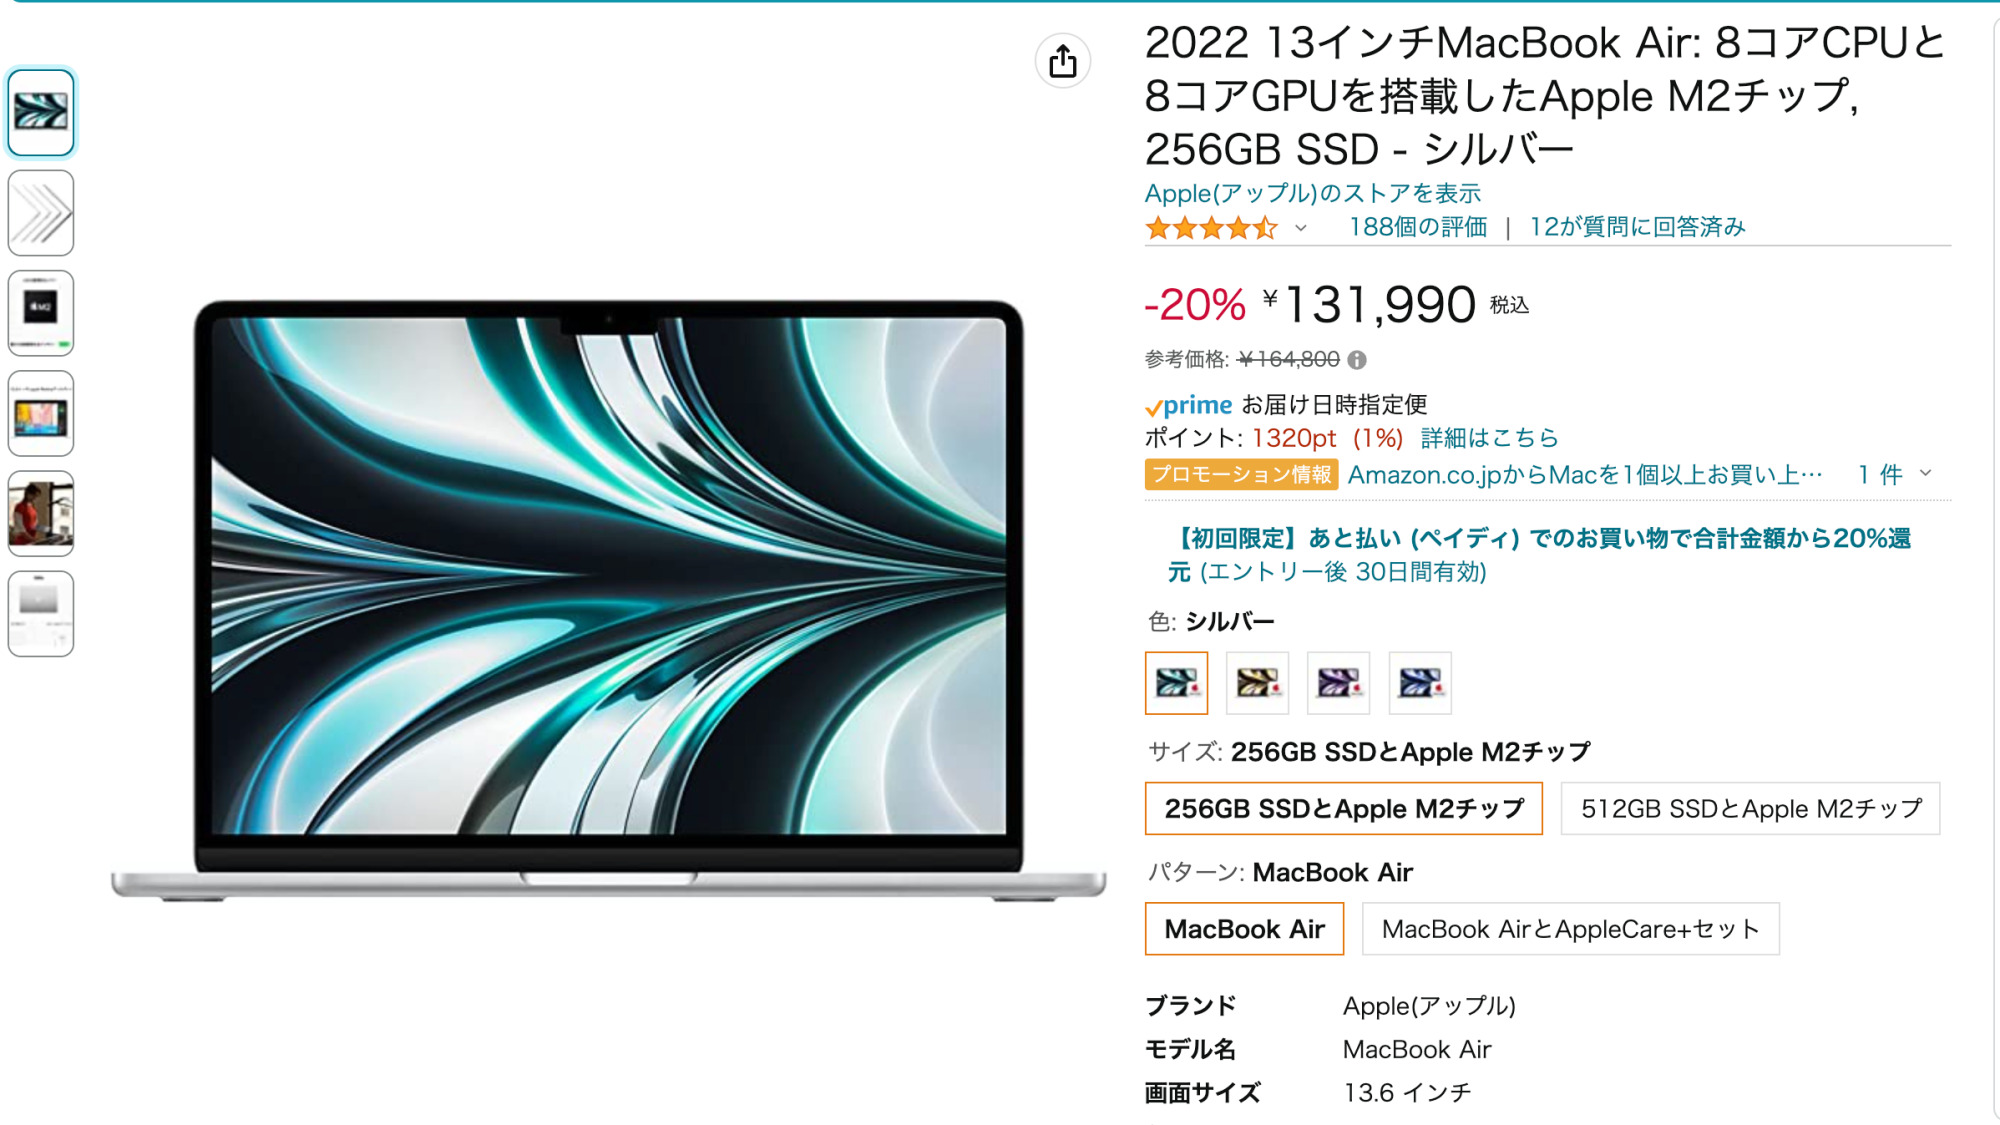 AmazonでM2 MacBook Air